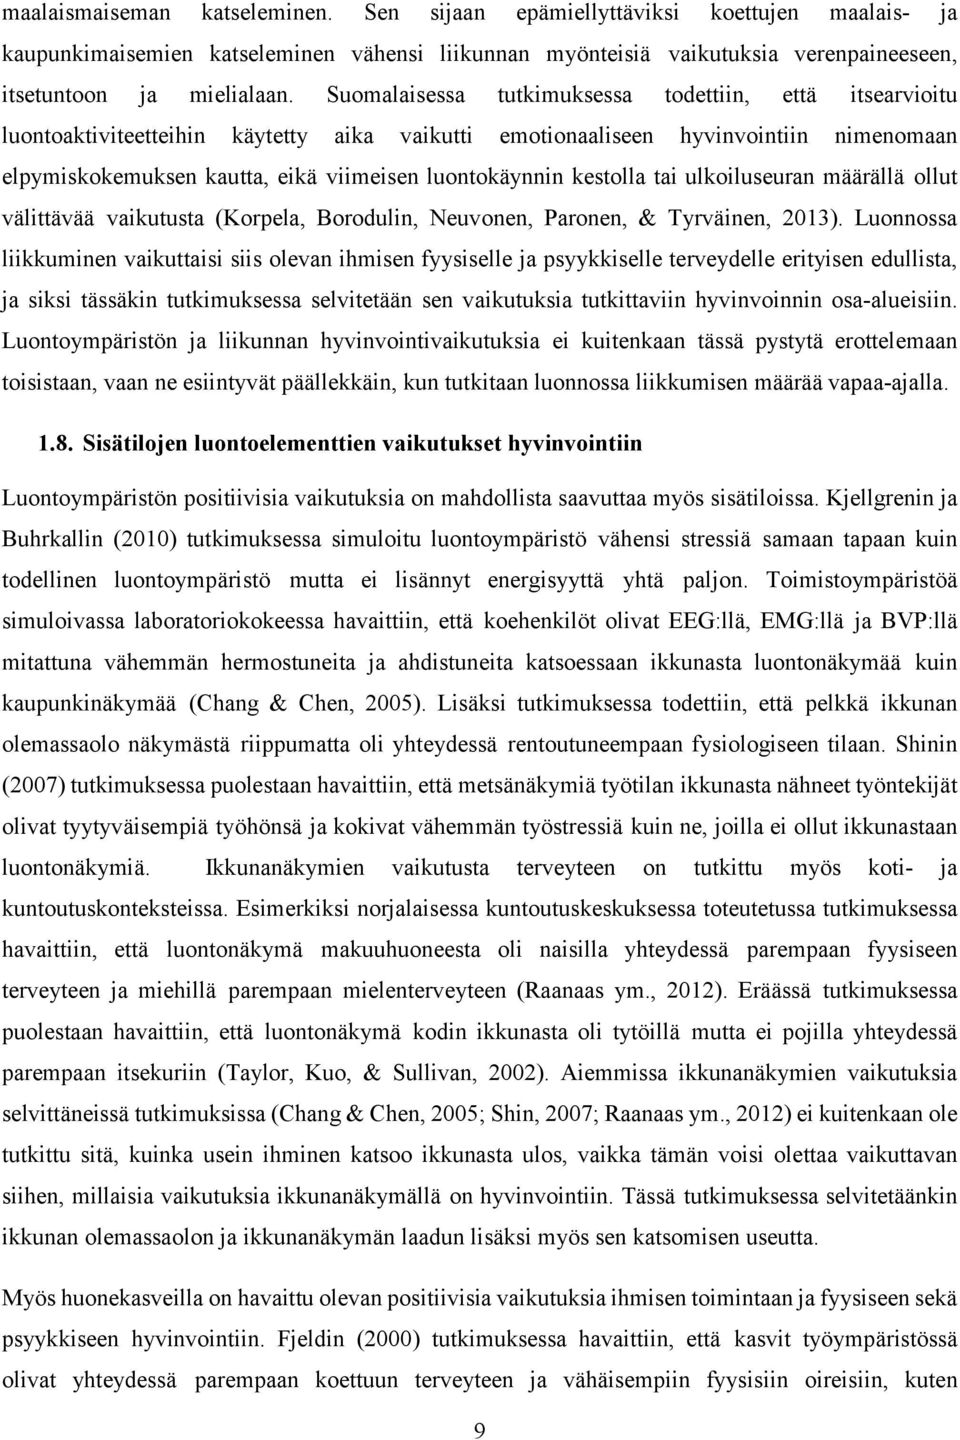 kestolla tai ulkoiluseuran määrällä ollut välittävää vaikutusta (Korpela, Borodulin, Neuvonen, Paronen, & Tyrväinen, 2013).